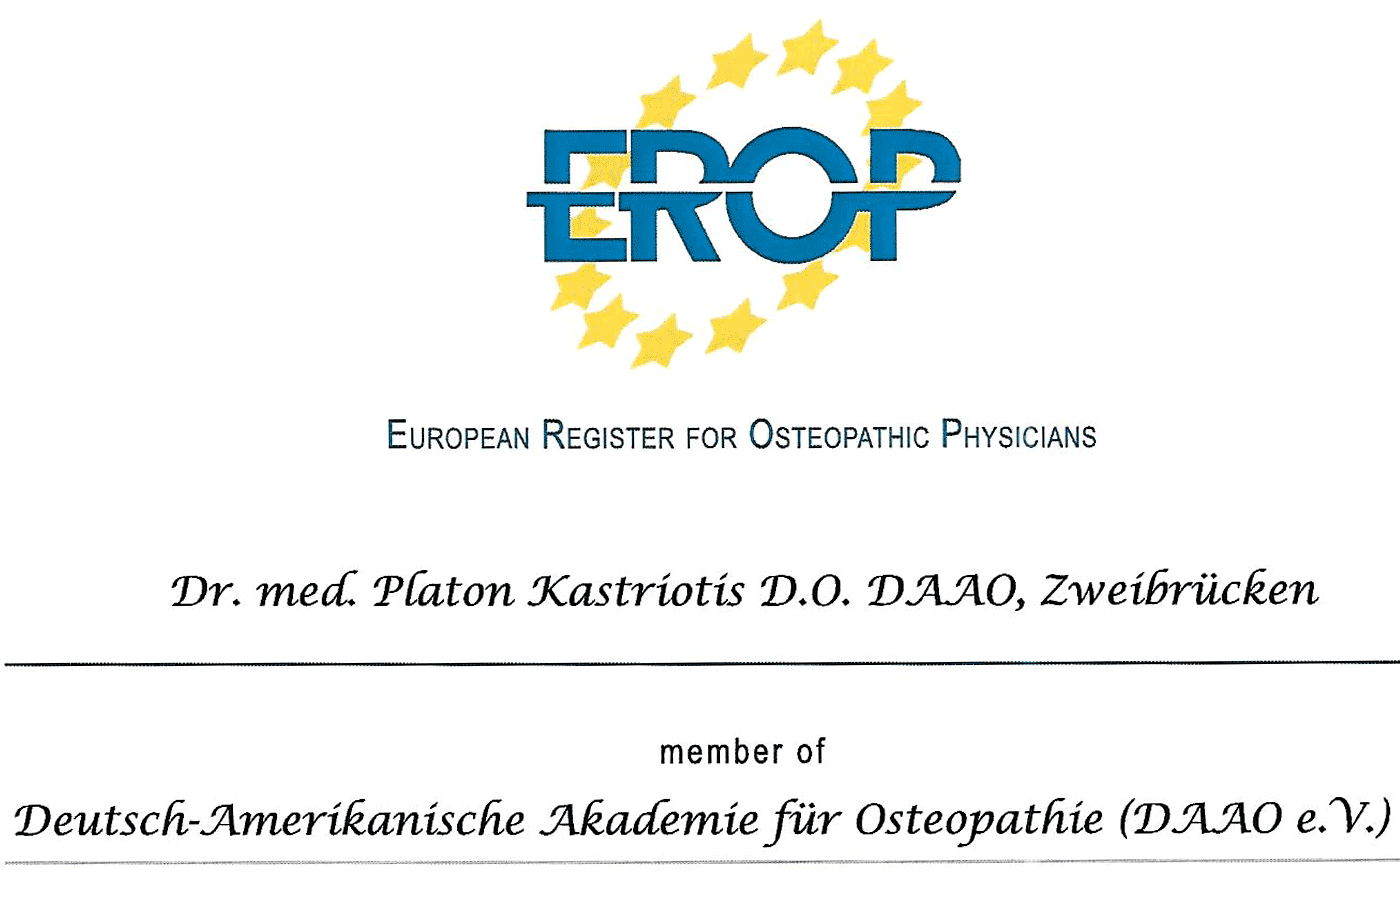 EROP Diplom für Osteopathische Medizin